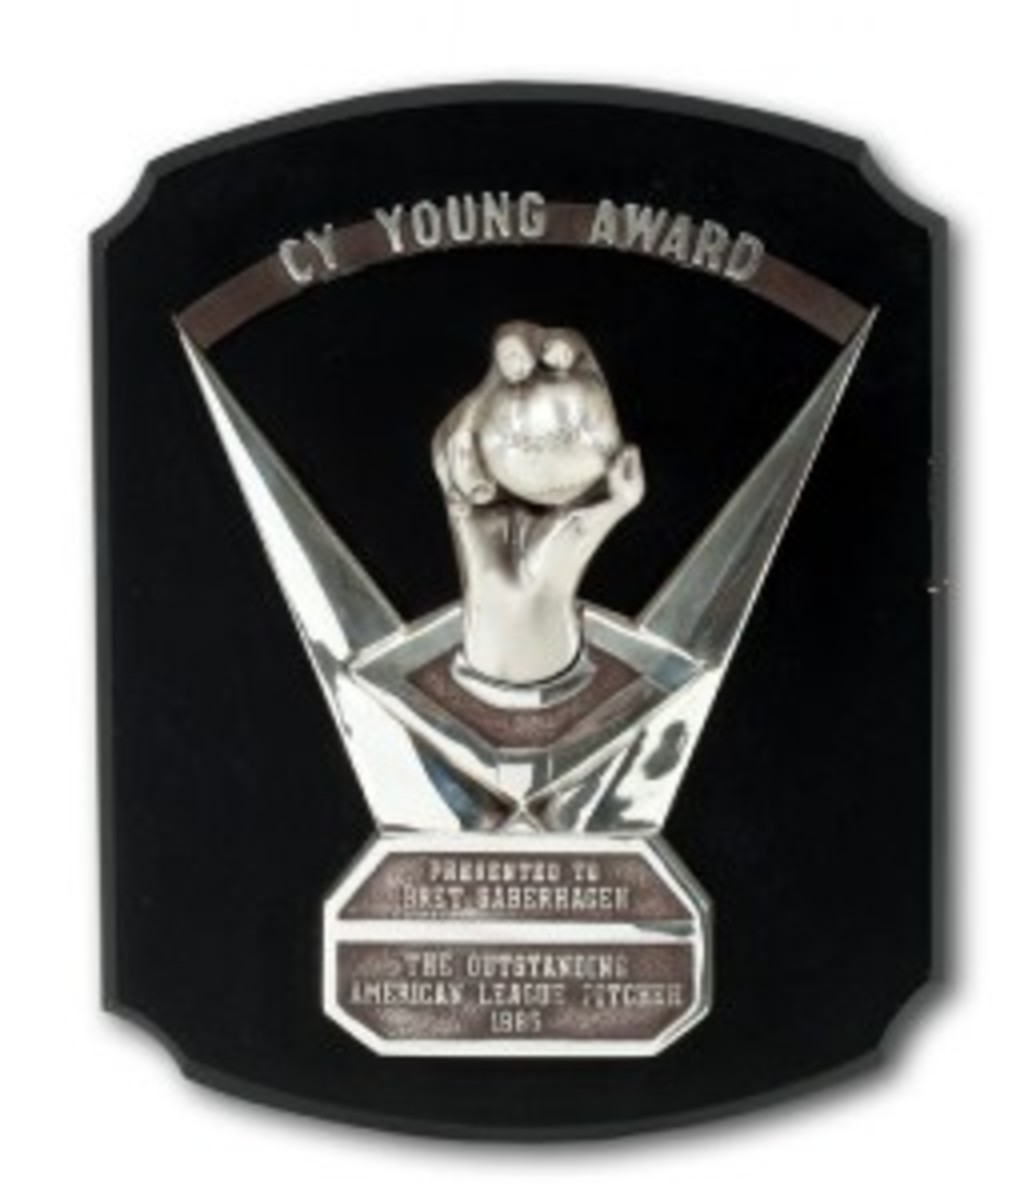 Saberhagen's 1985 Cy Young Award